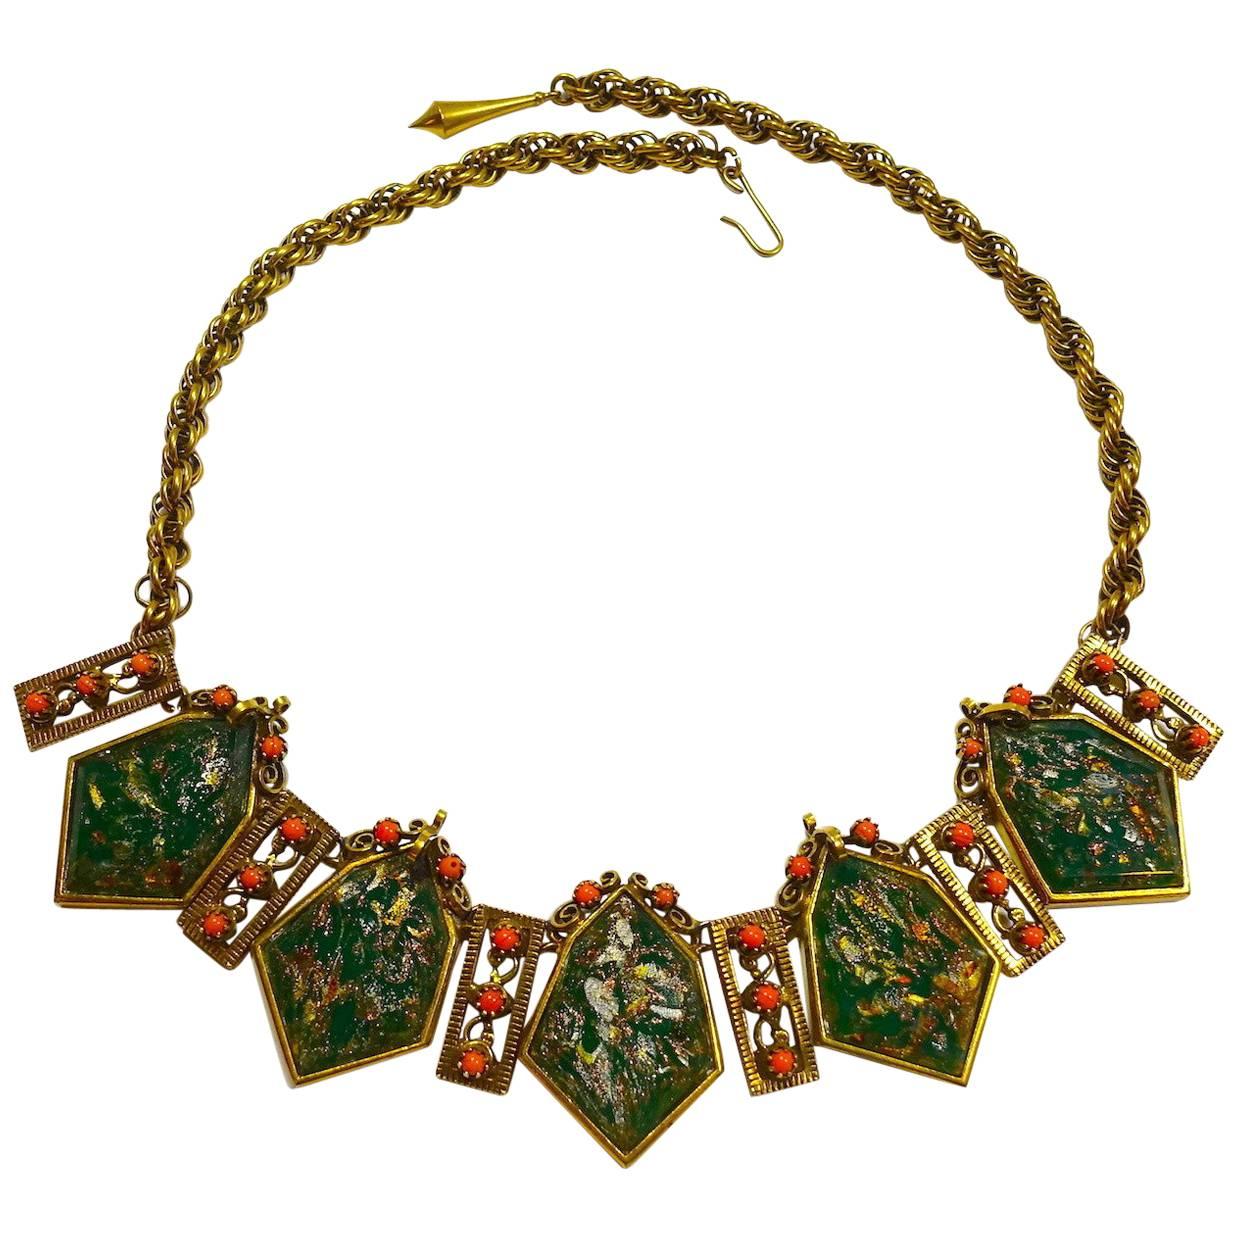 Vintage 1940s Faux Coral & Green Foil Drops Necklace